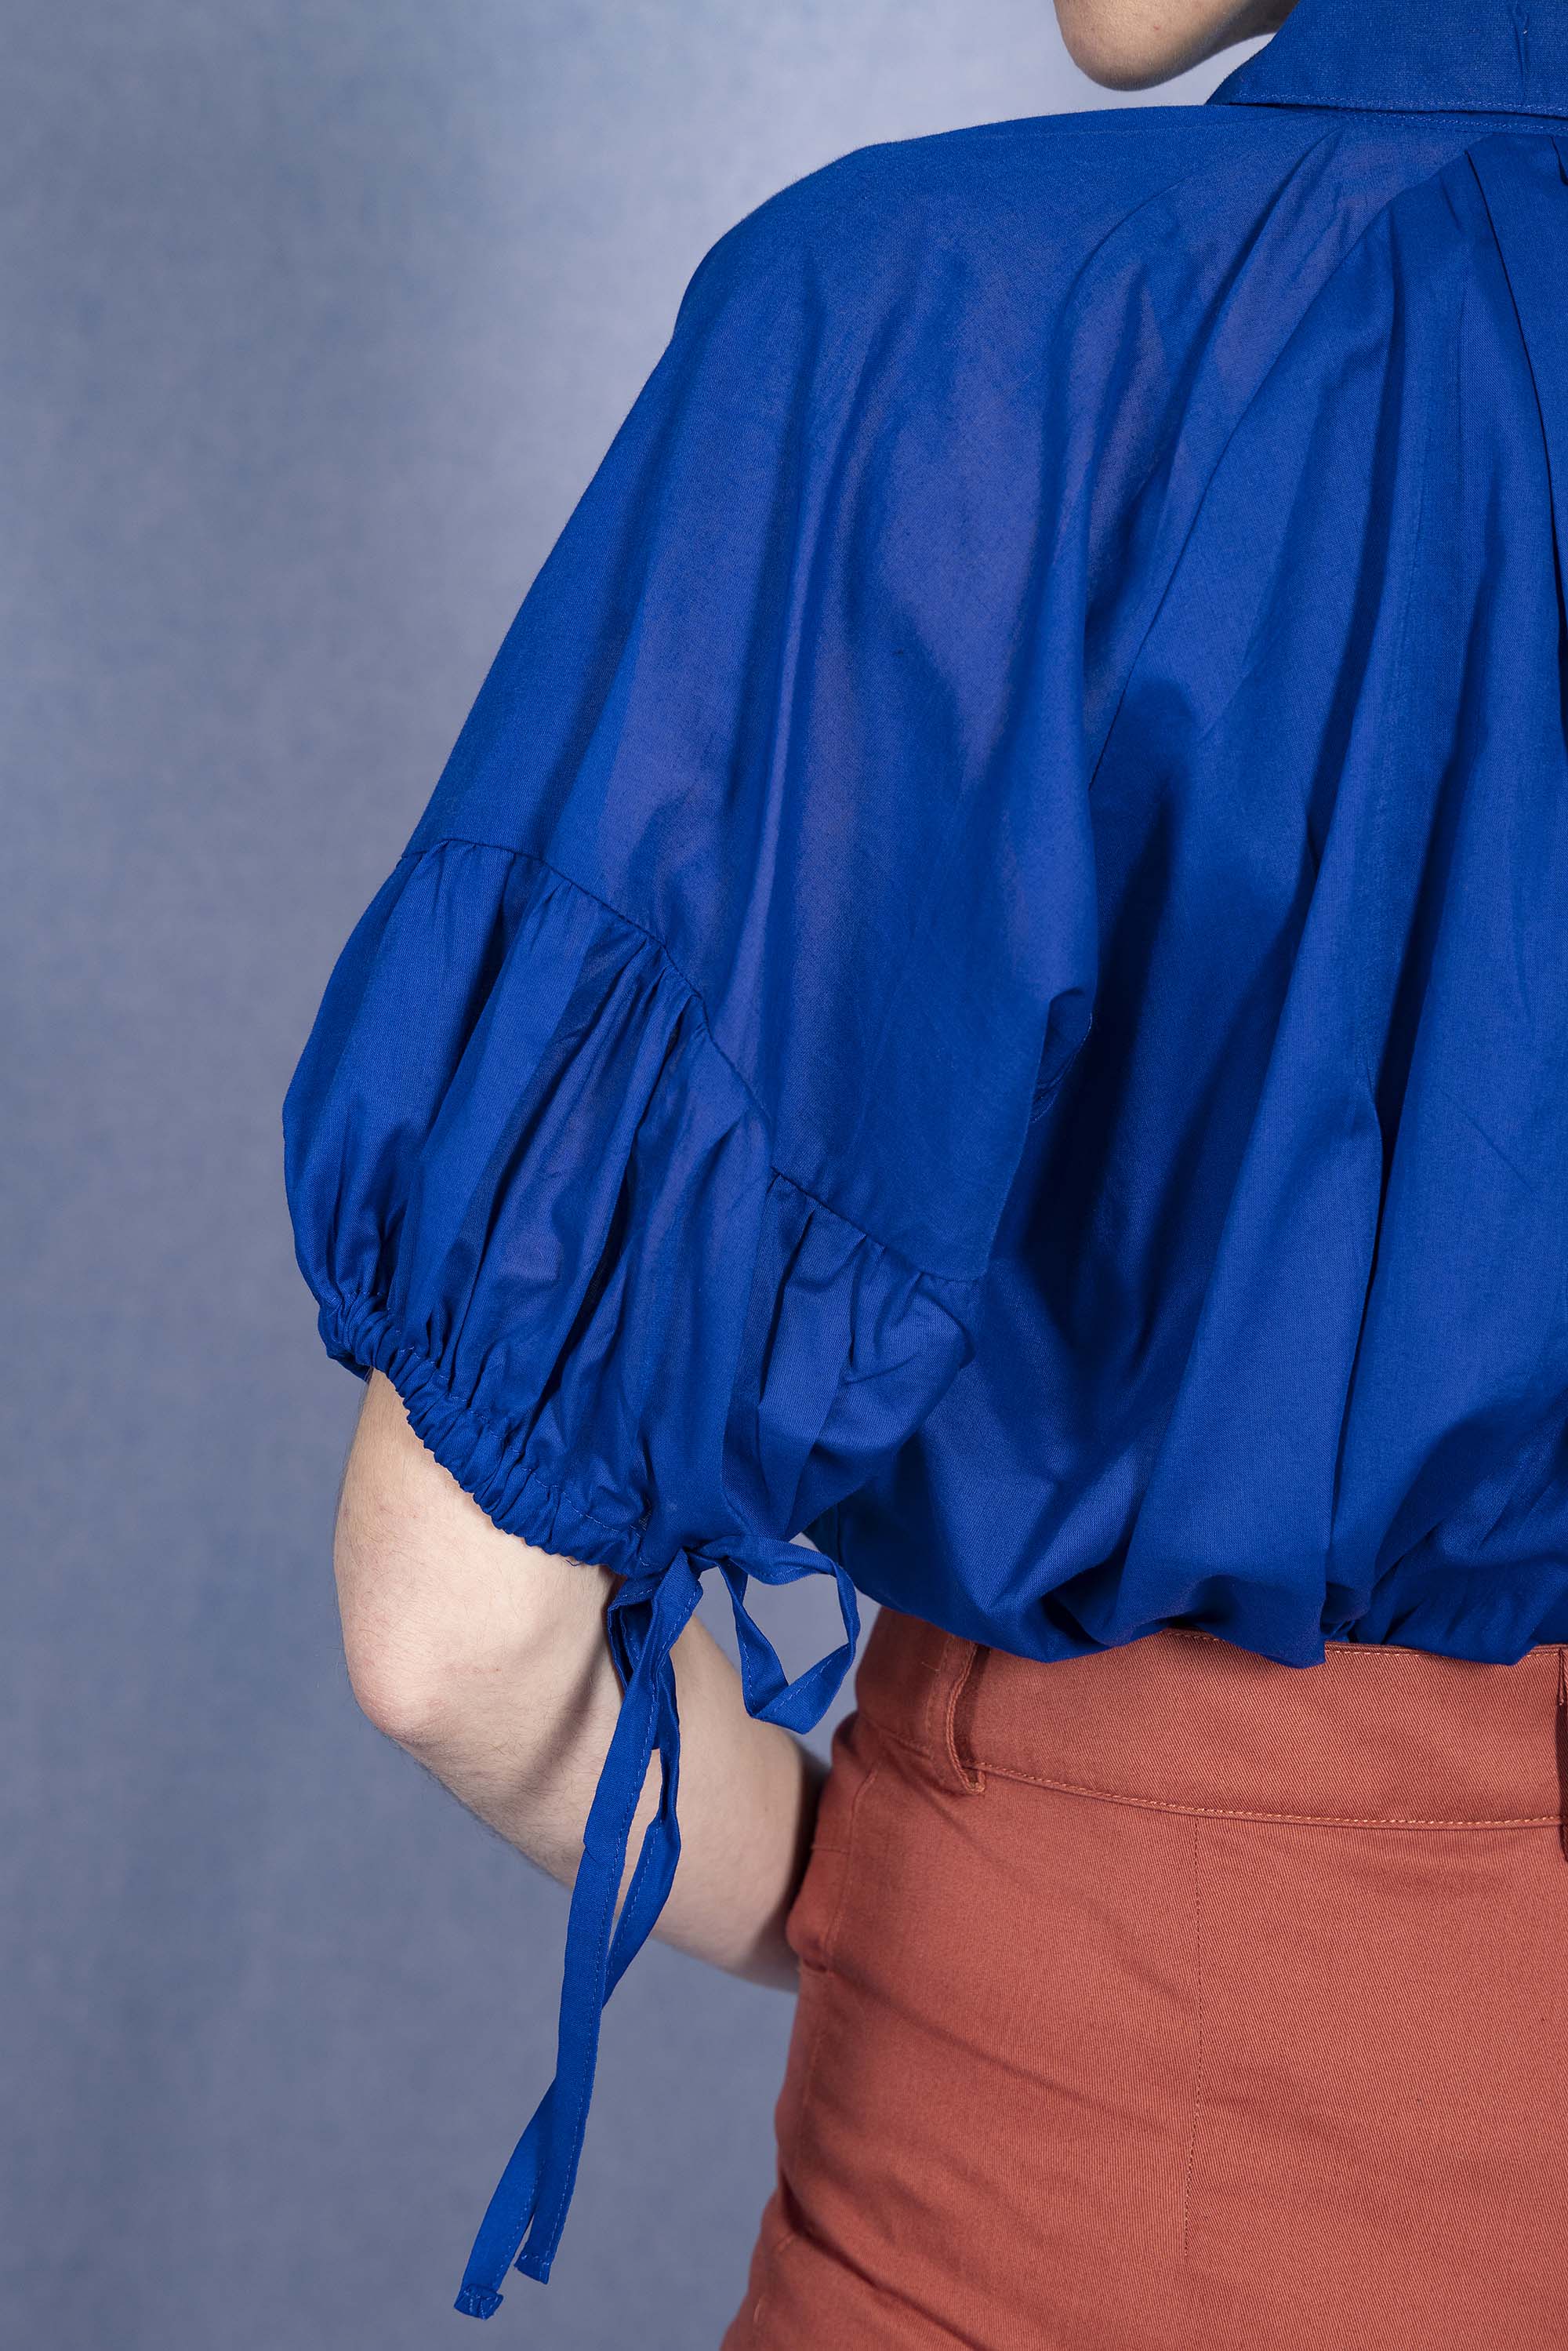 Chemise Nuria Bleu Saphir chemise Misericordia, librement inspirée de différents univers